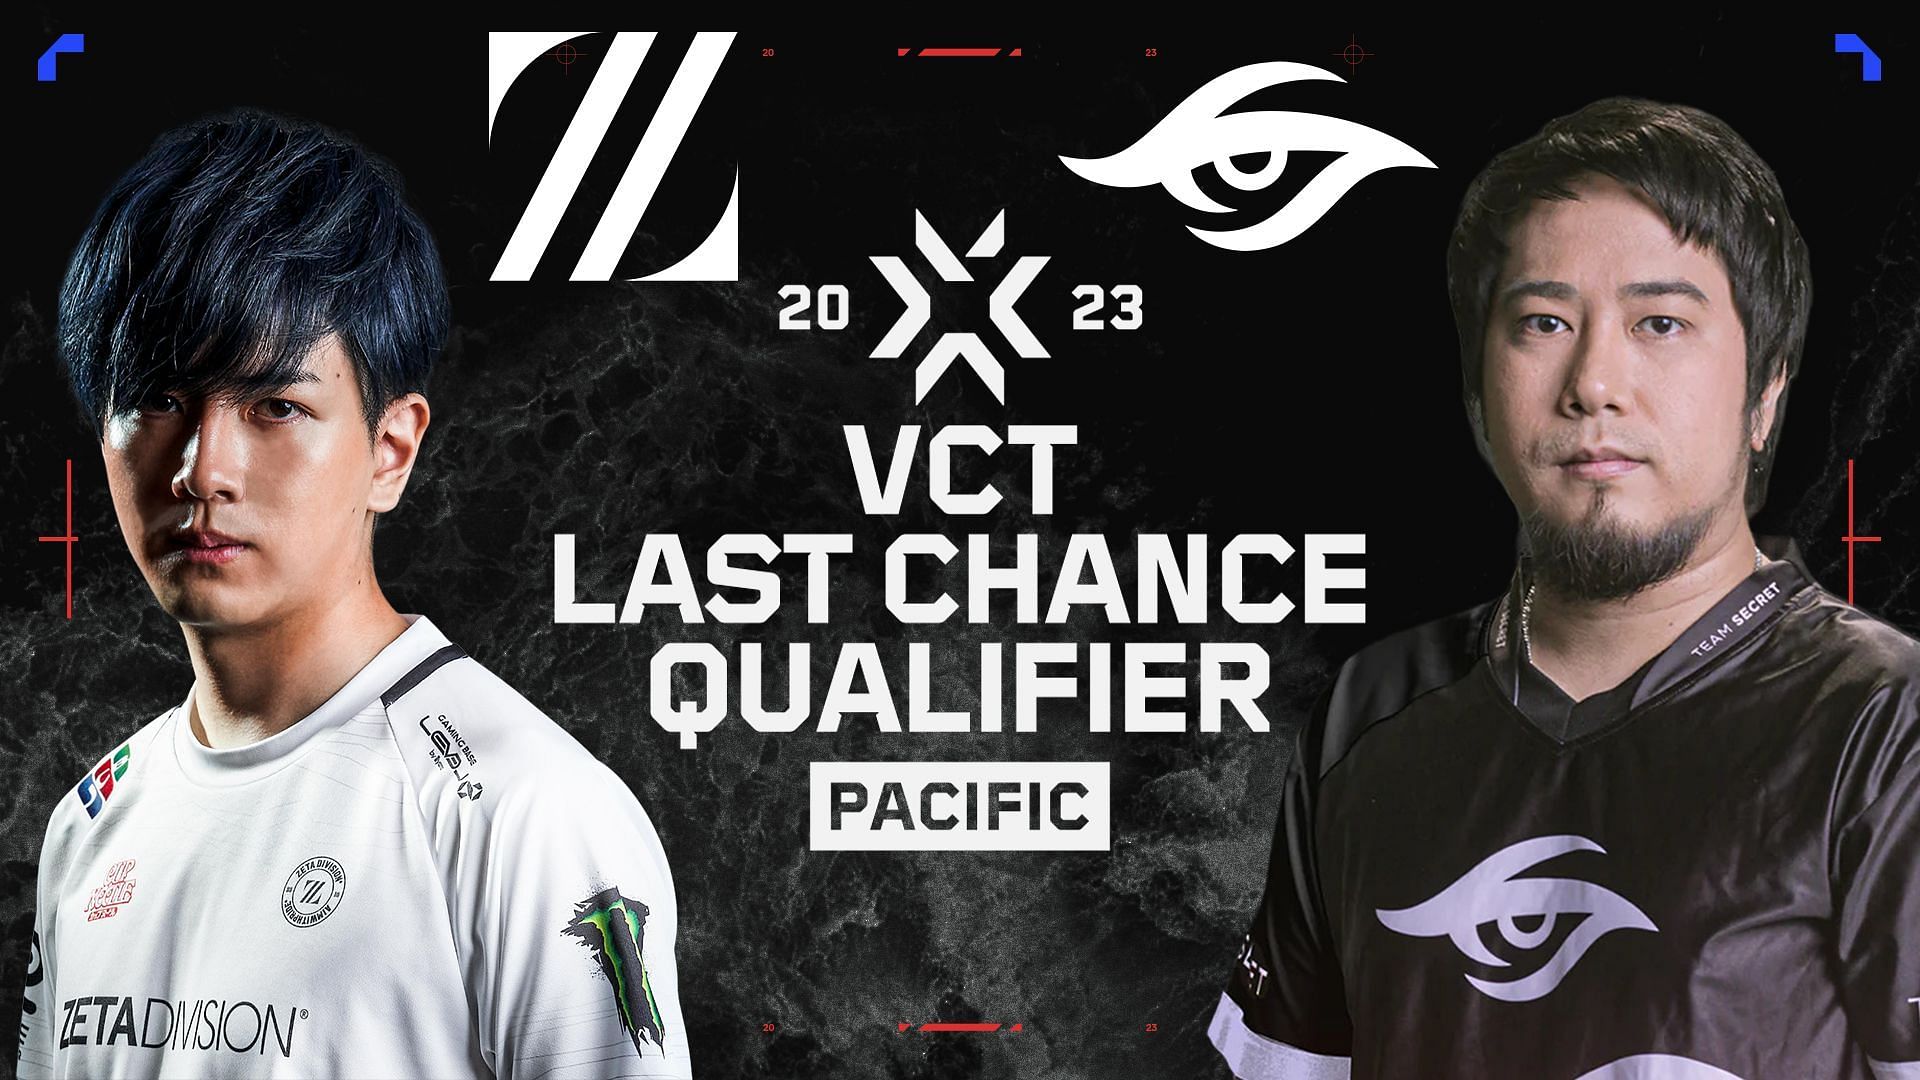 ZETA DIVISION vs Team Secret in VCT Pacific LCQ 2023 Grand finals (Image via Sportskeeda)